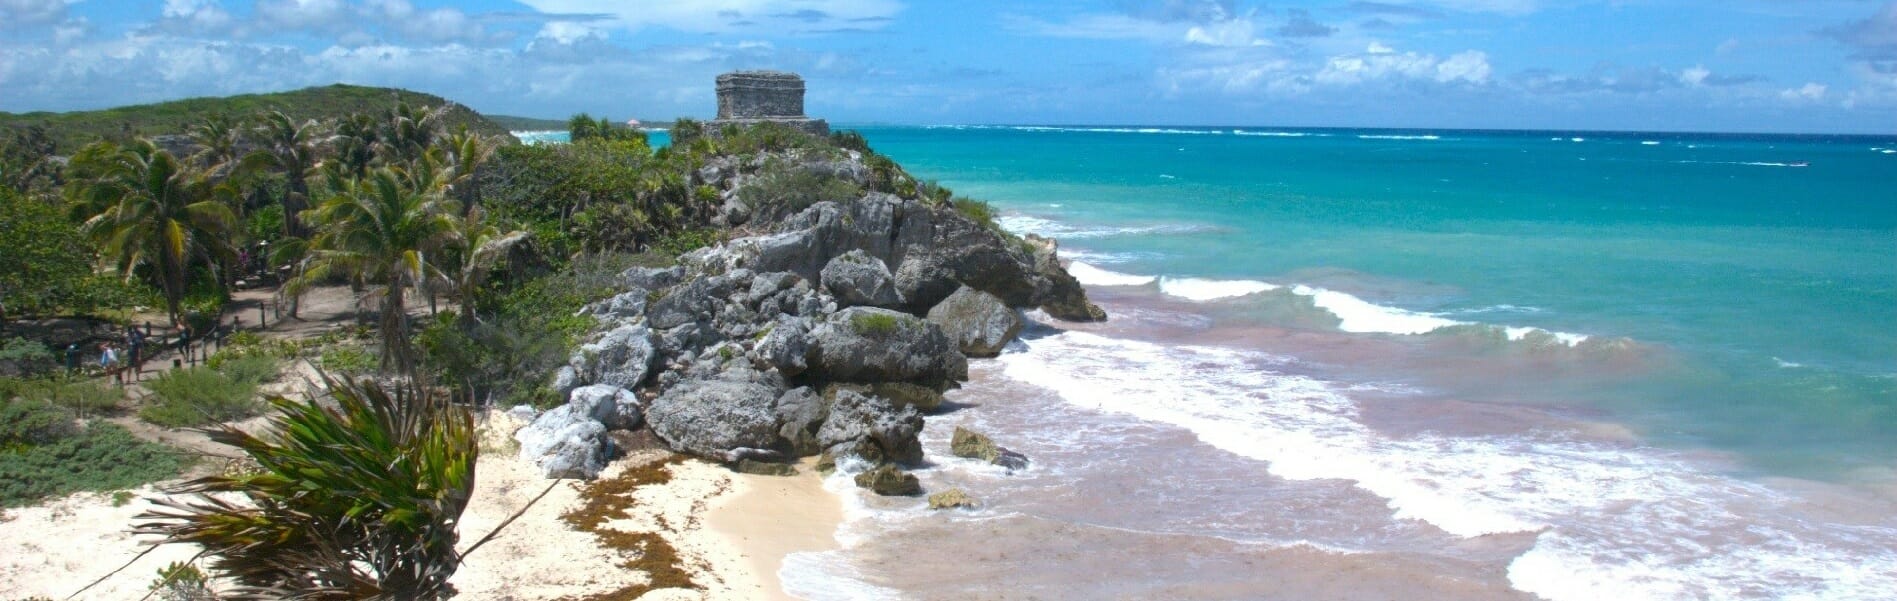 A ruin stood on beach and blue ocean